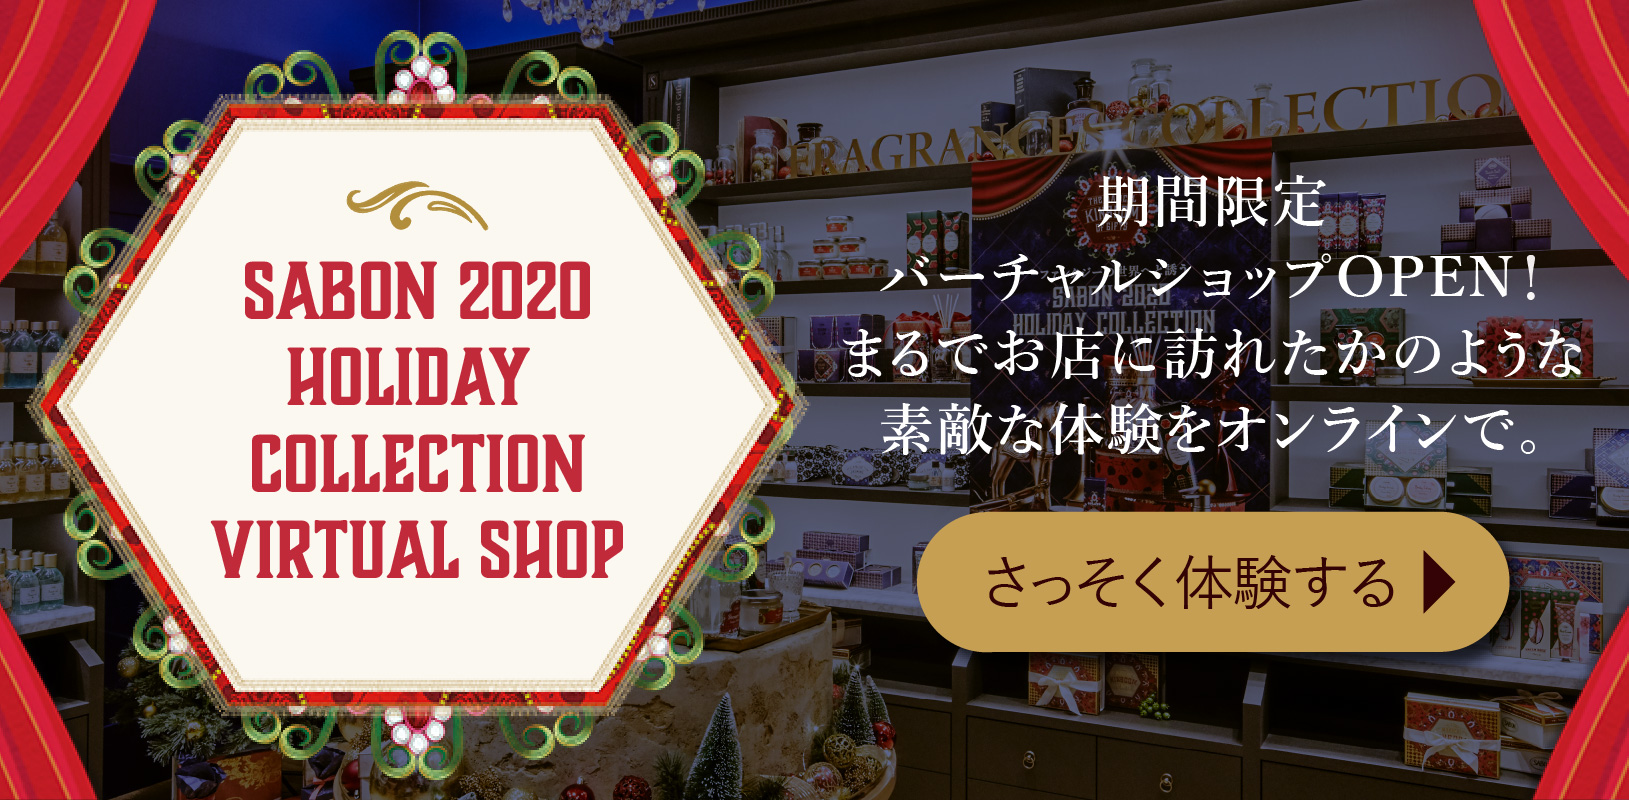 SABON 2020 Holiday Collection Virtual Shop 期間限定バーチャルショップOPEN！まるでお店に訪れたかのような素敵な体験をオンラインで。さっそく体験する